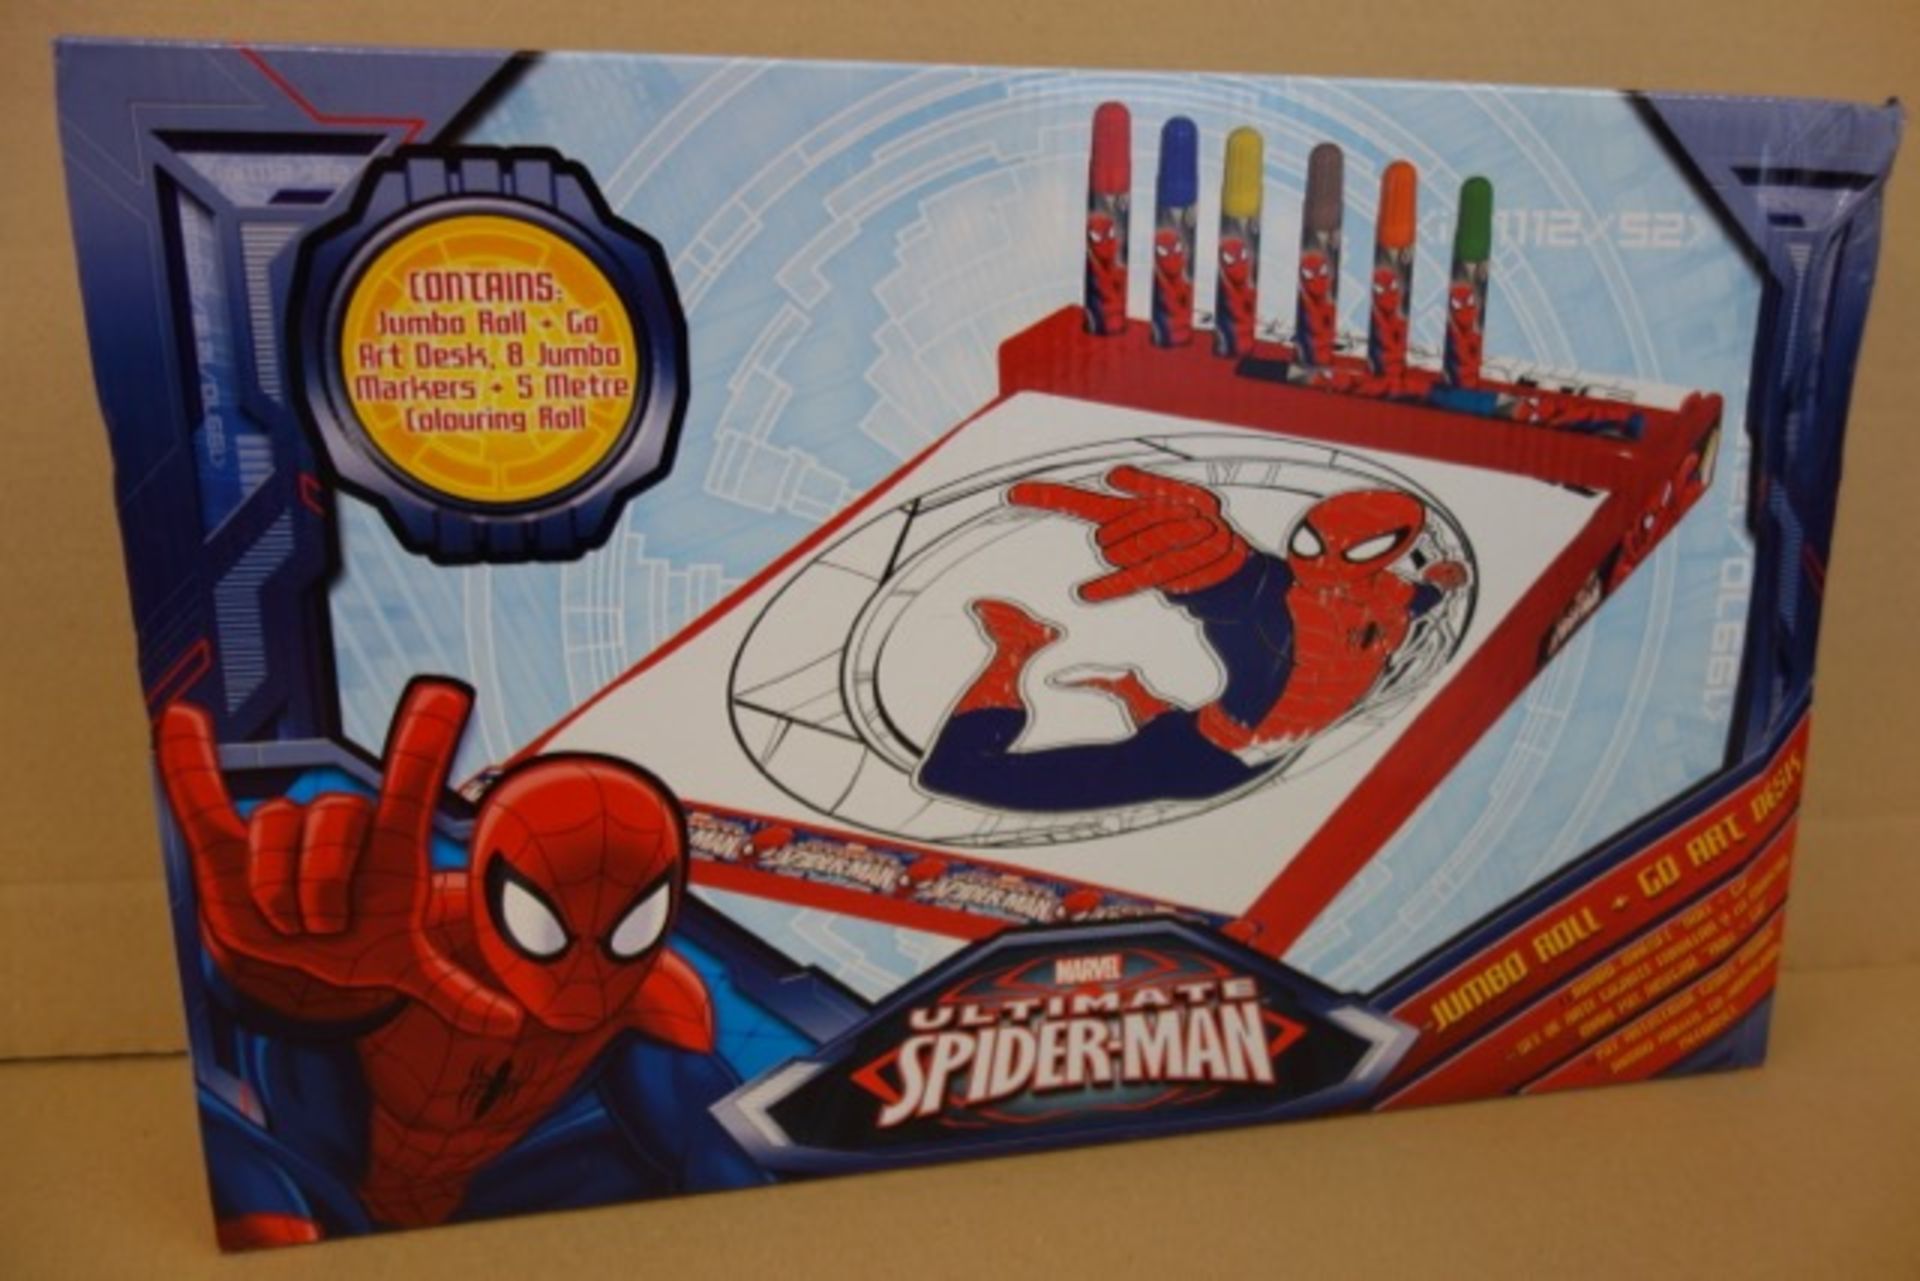 24 x Brand New Marvel Ultimate Spiderman Jumbo Roll + Go Art Desks. Original RRP £19.99 each, giving